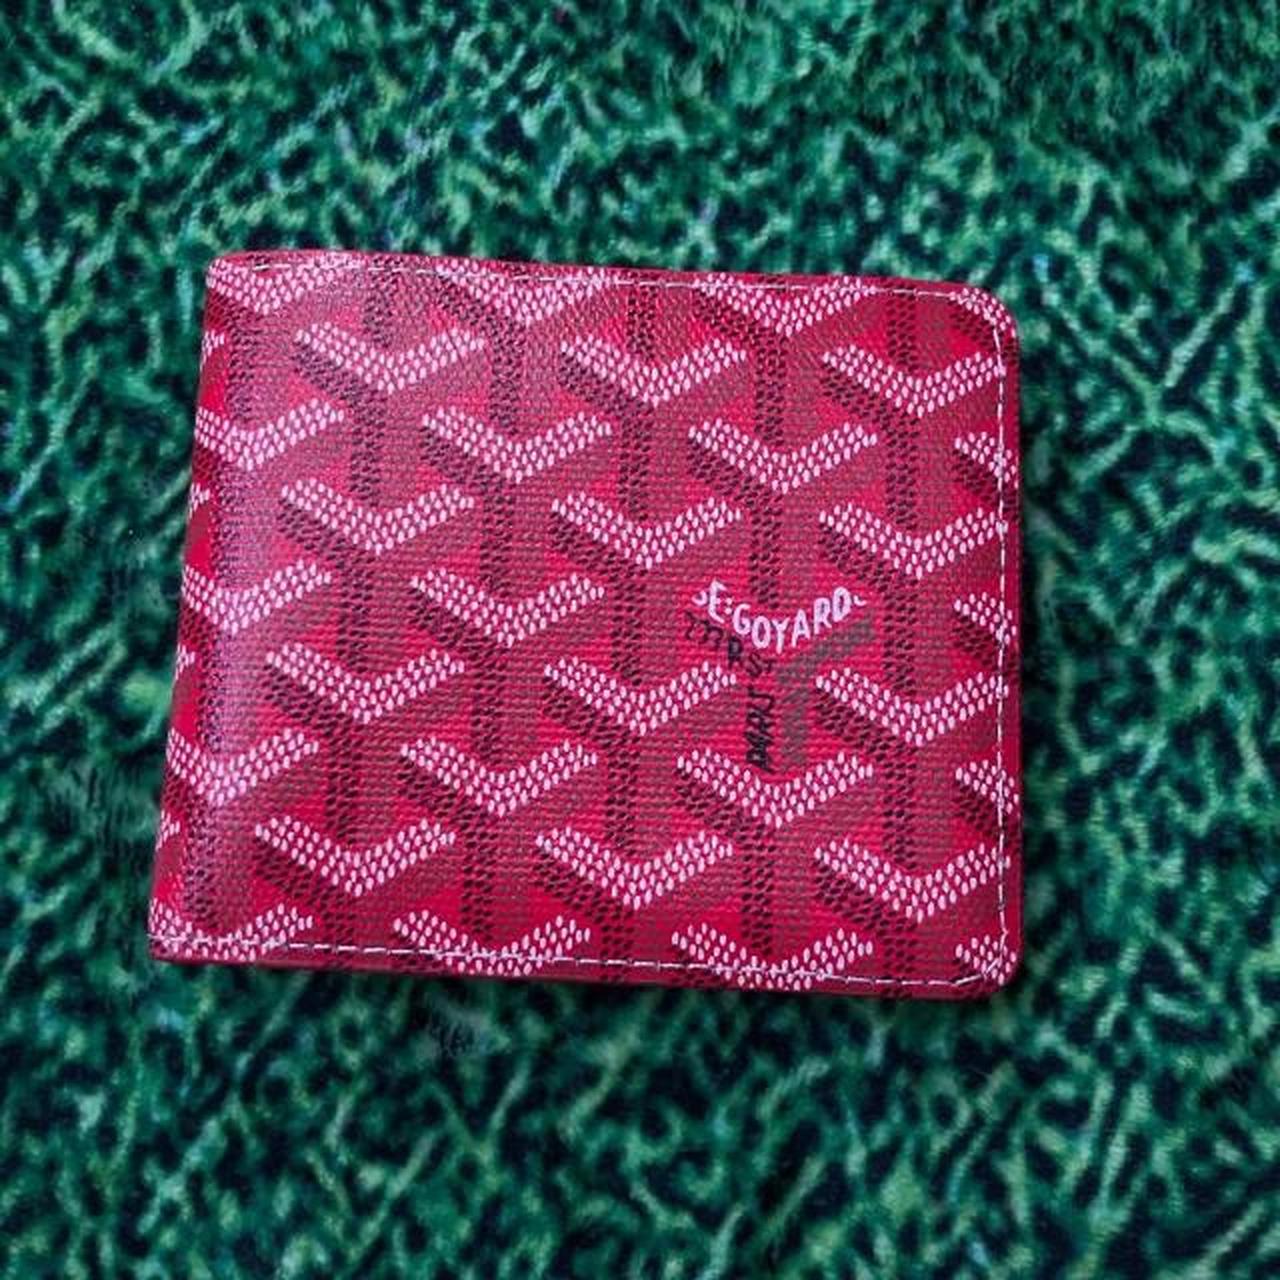 Wallet Goyard Red in Not specified - 25492048